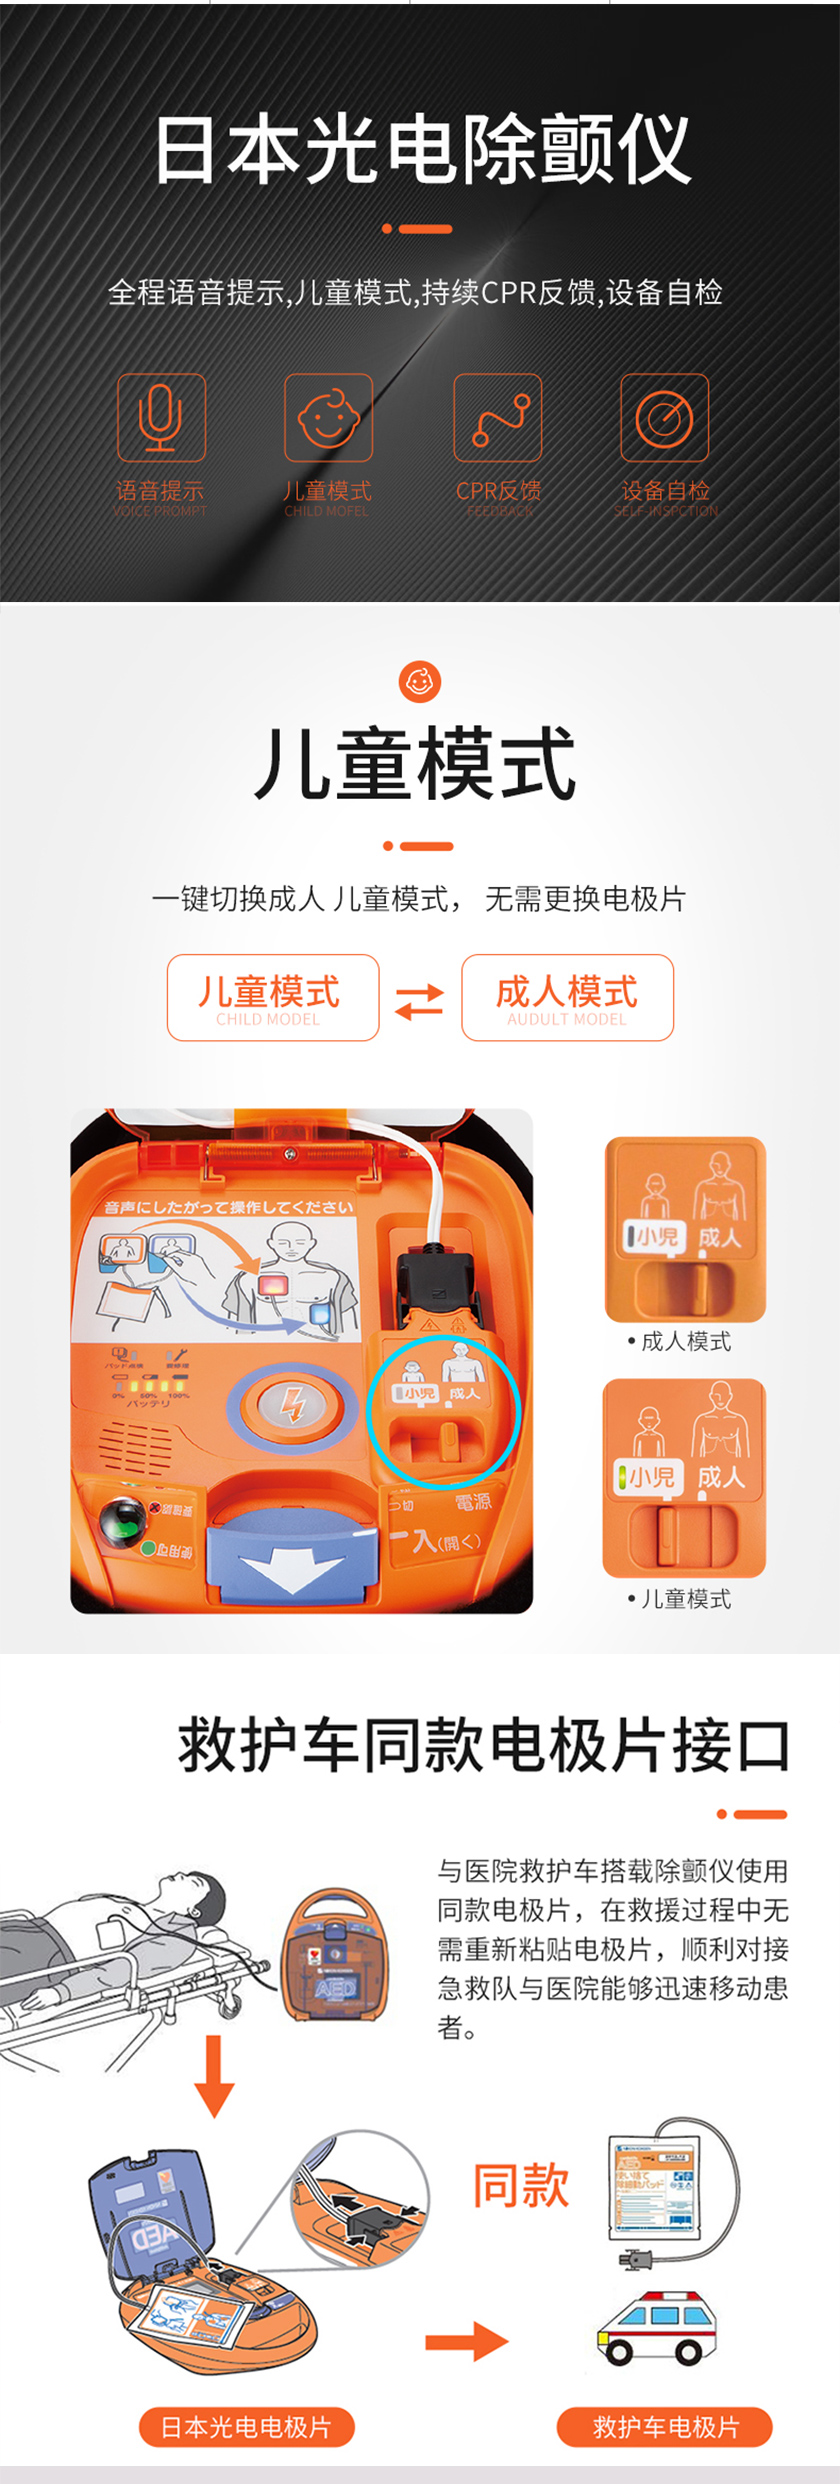 光电AED 自动体外除颤仪AED-2151